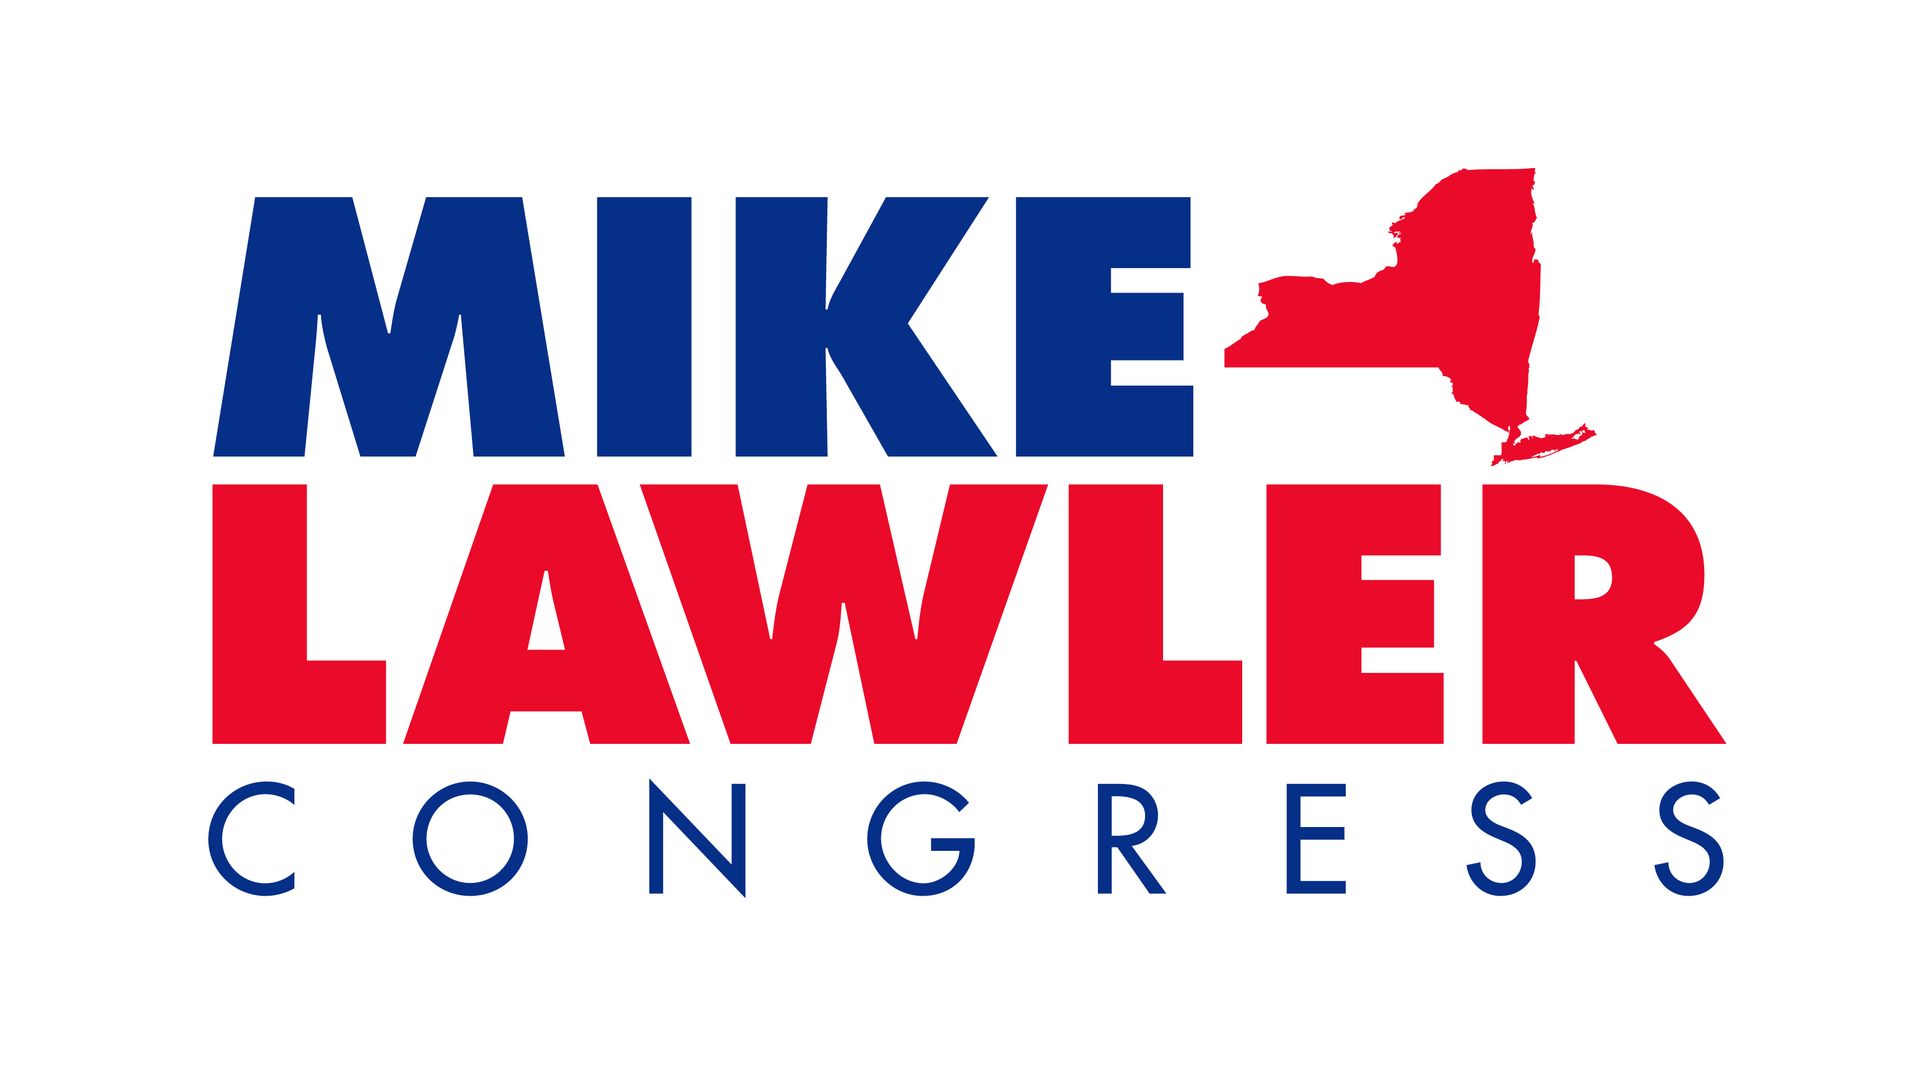 Mike lawler congress white logo